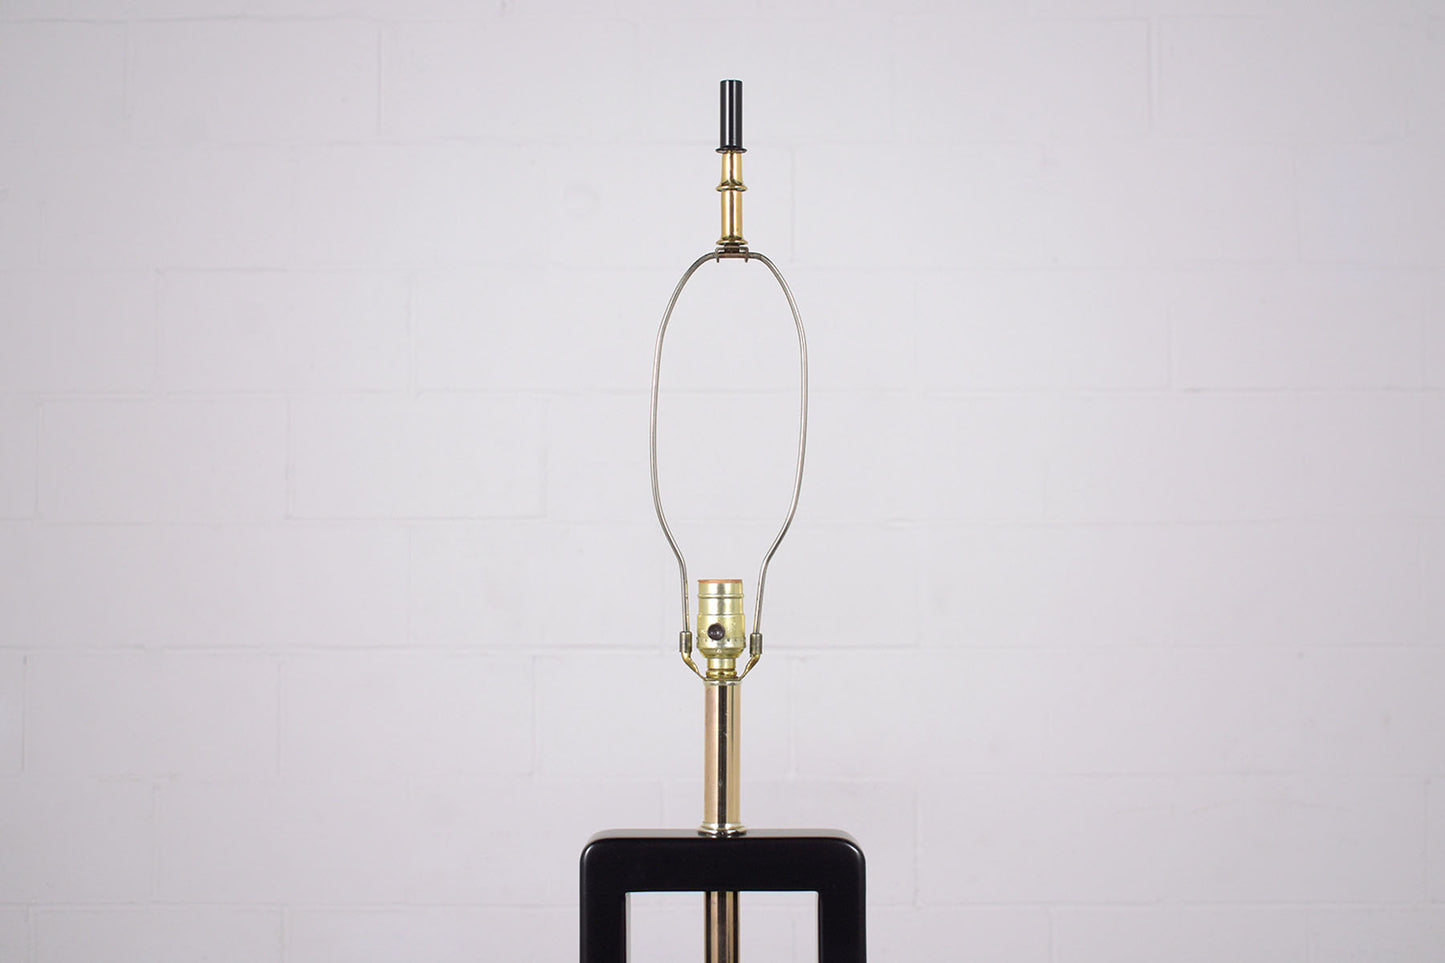 Vintage 1970s Mid-Century Modern Brass Floor Lamp